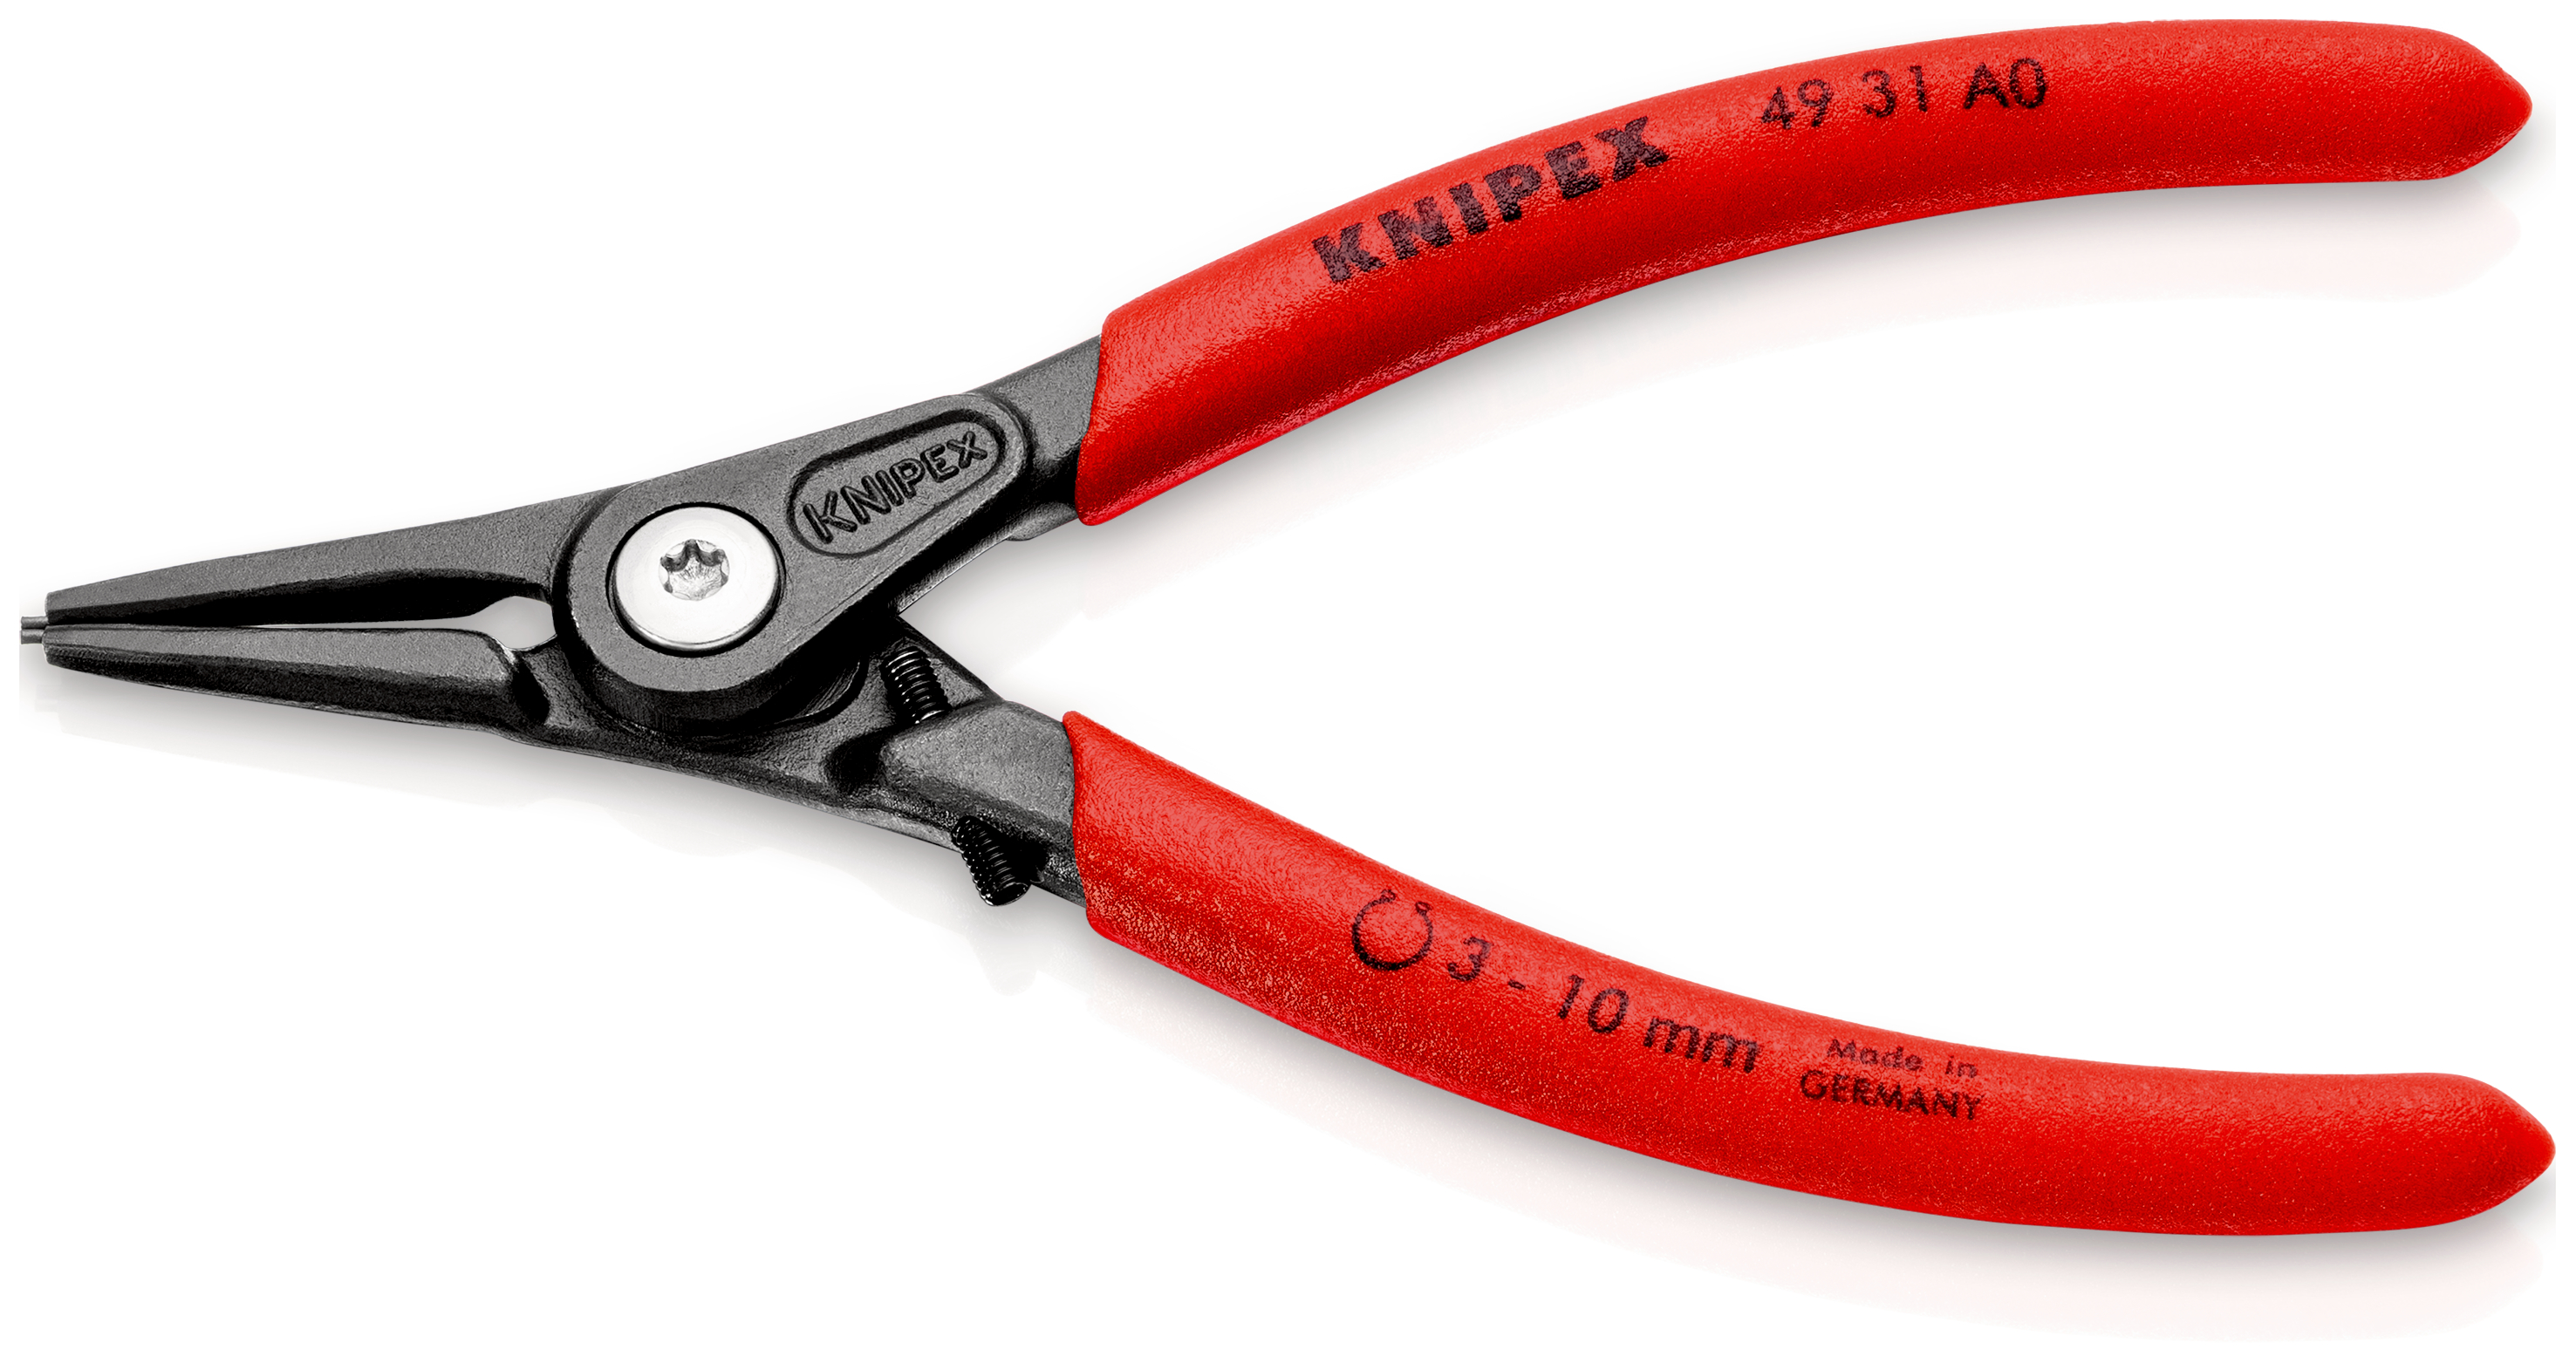 Knipex 4931A0 Cleste pentru inele de siguranță de exterior cu protecţie la supraîntindere, lungime 140 mm